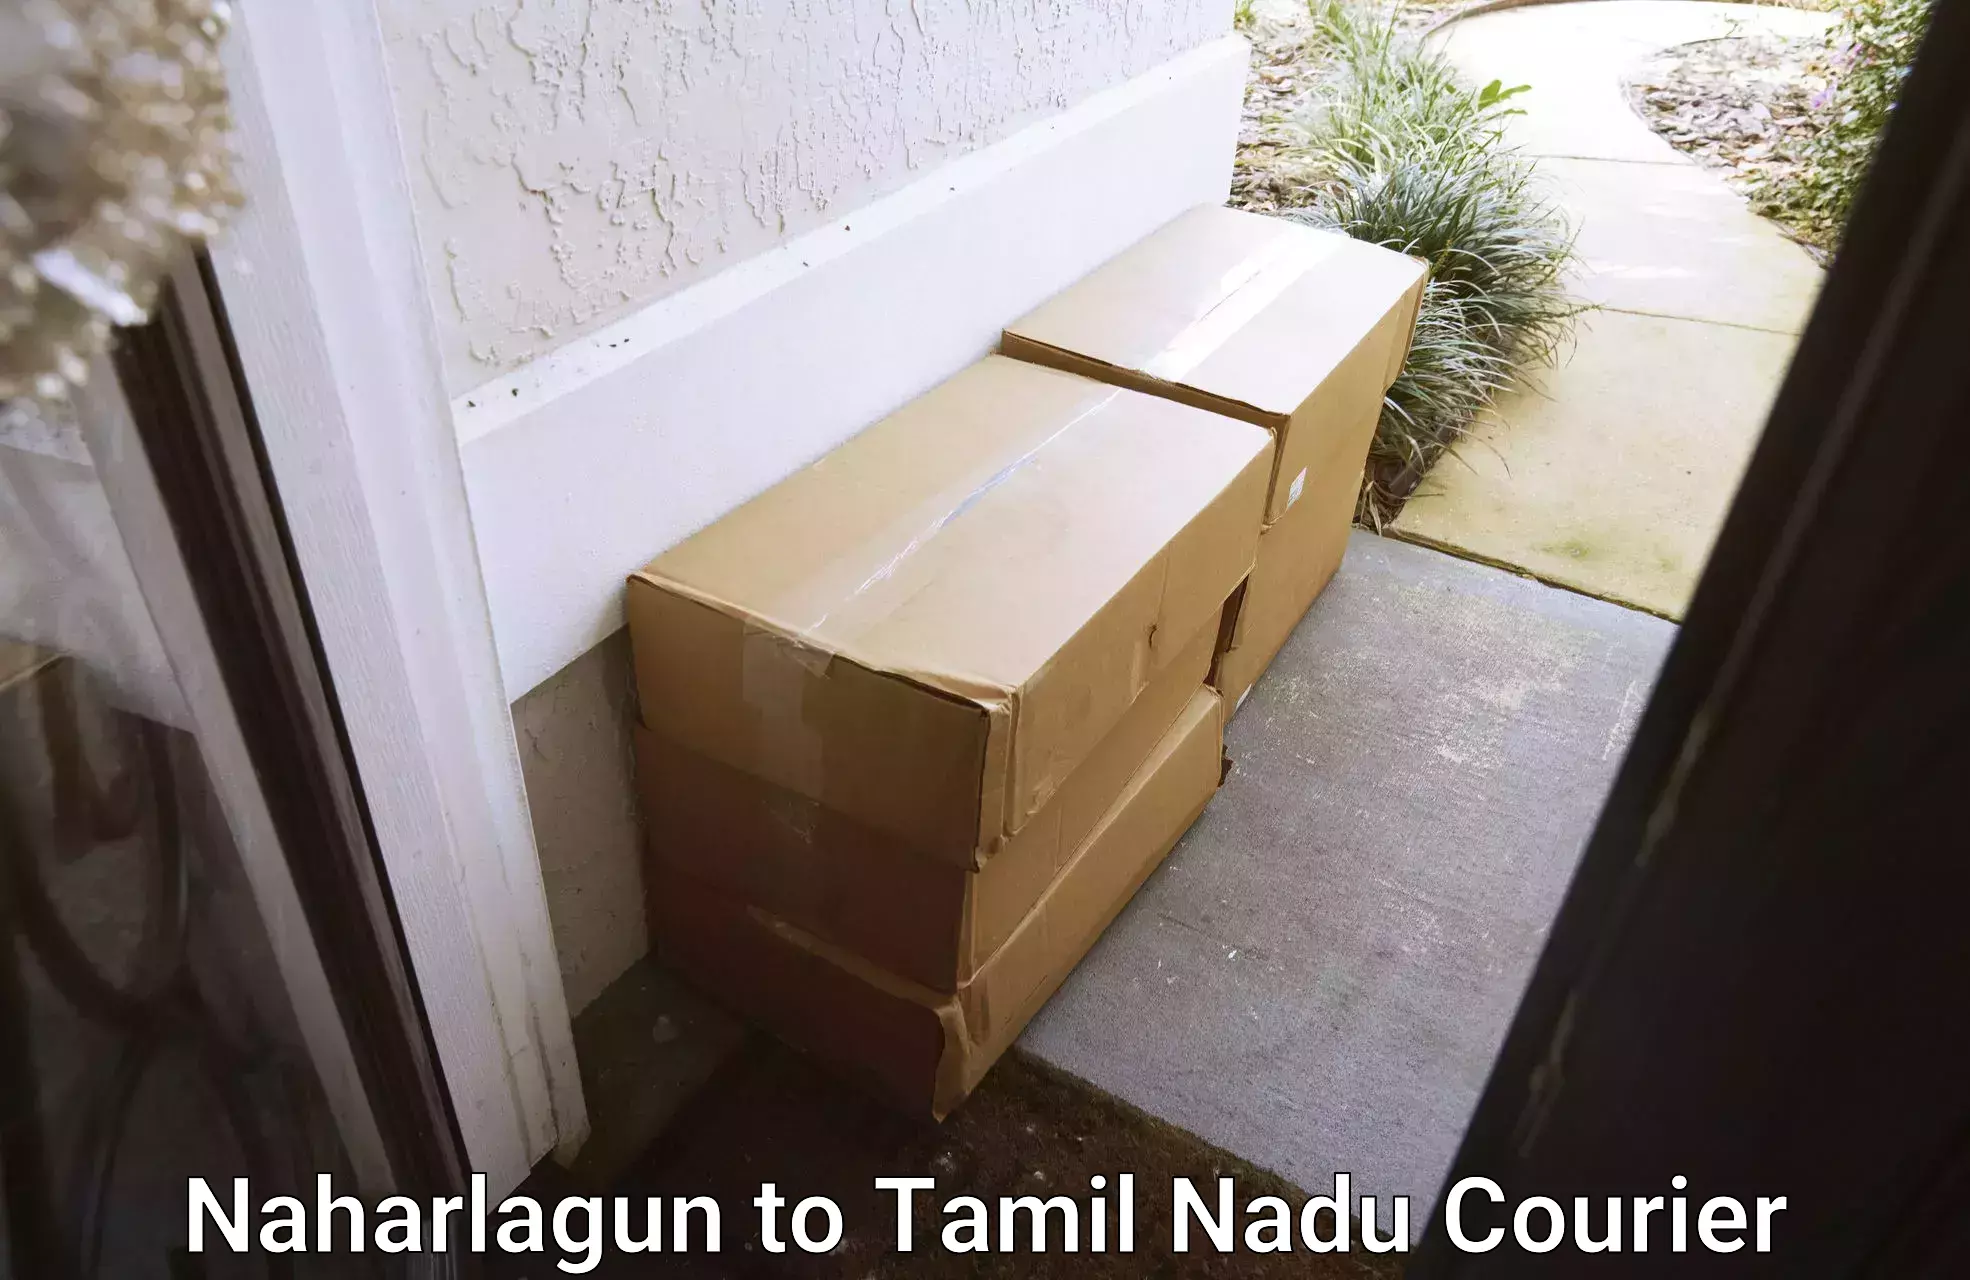 Urgent courier needs Naharlagun to Azhagappapuram